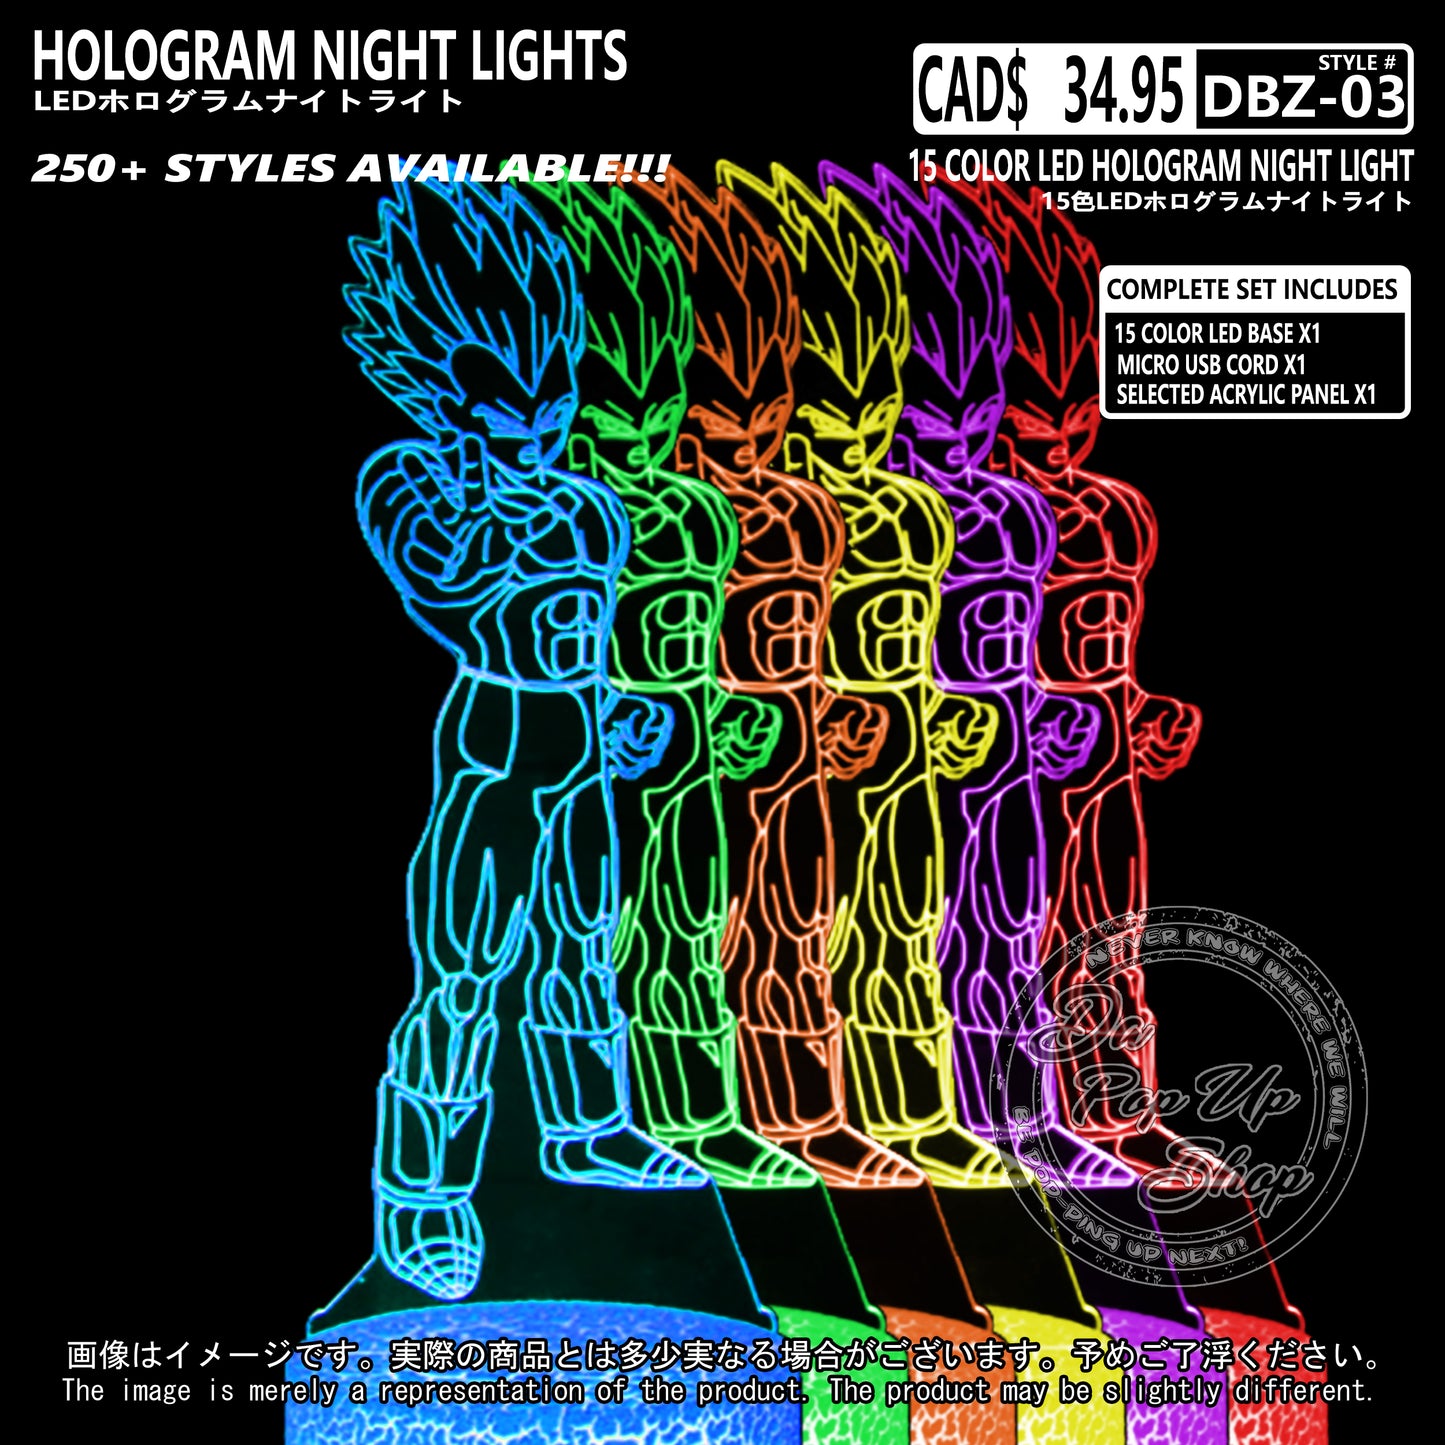 (DBZ-03) Dragon Ball Z Hologram LED Night Light